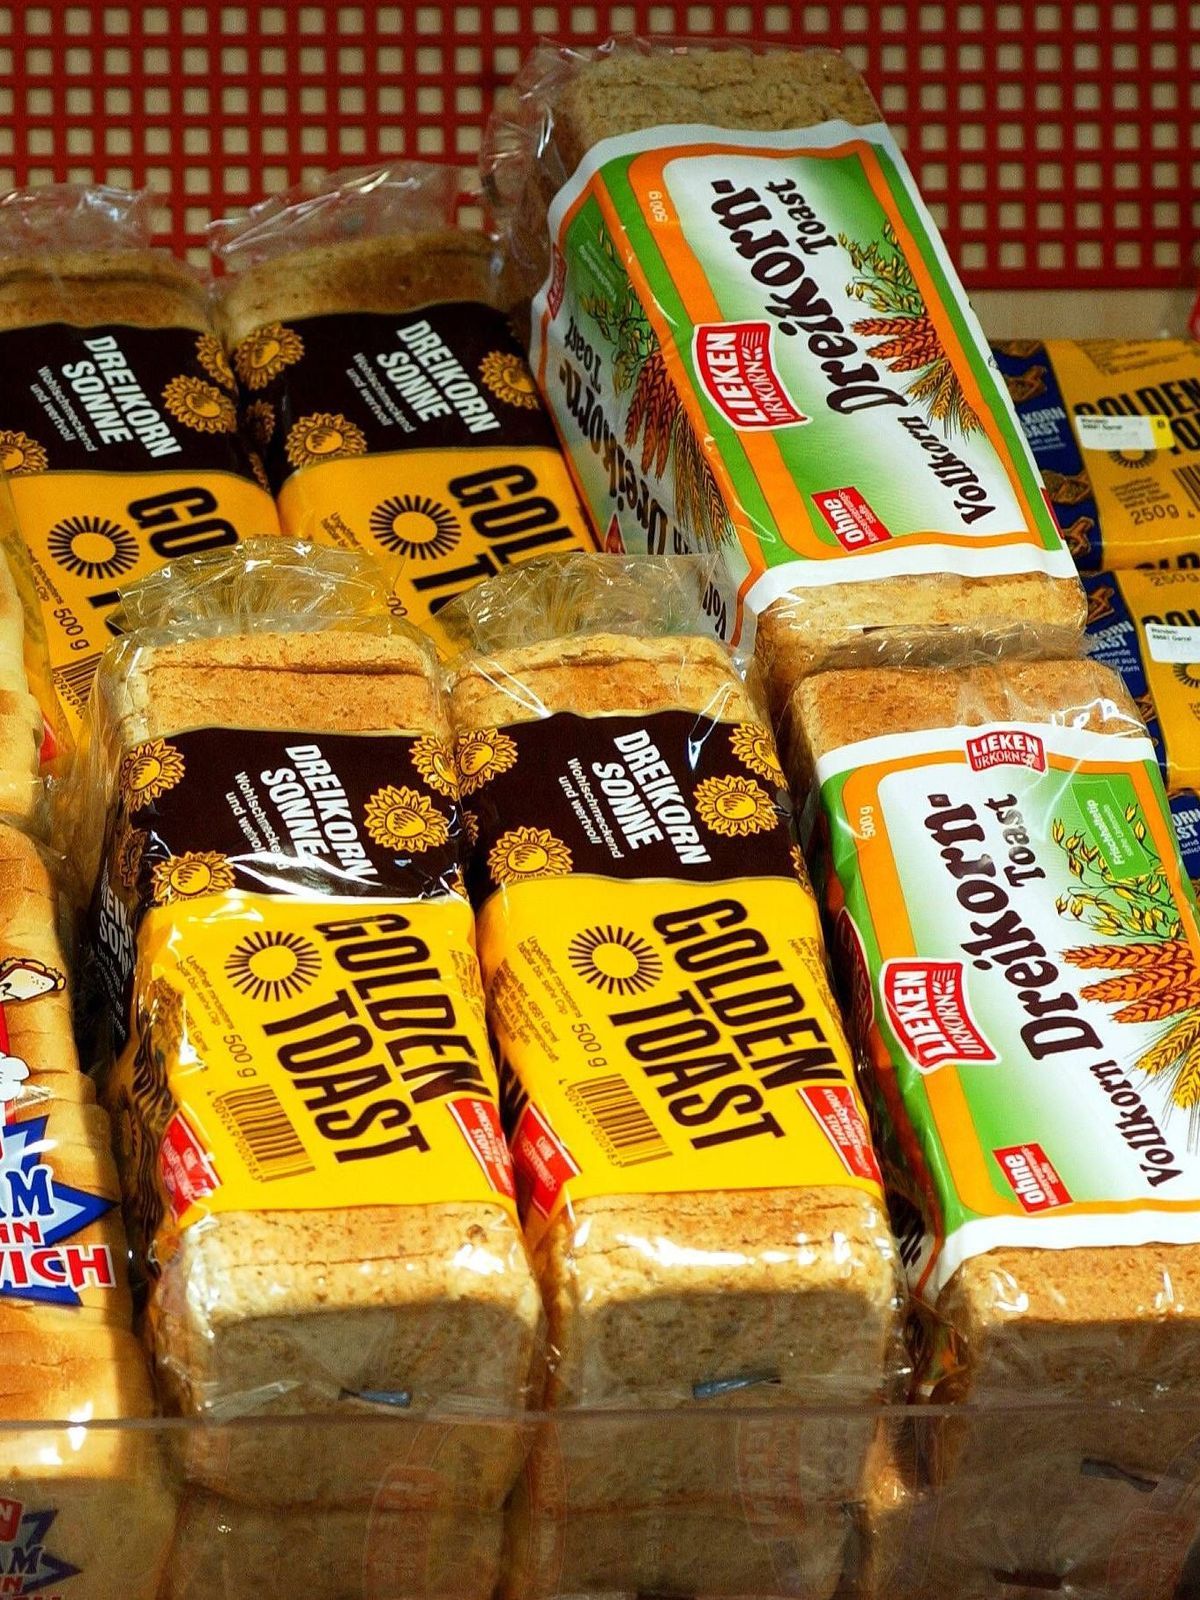 Toast-Brot in einem Supermarkt-Regal 0050174967